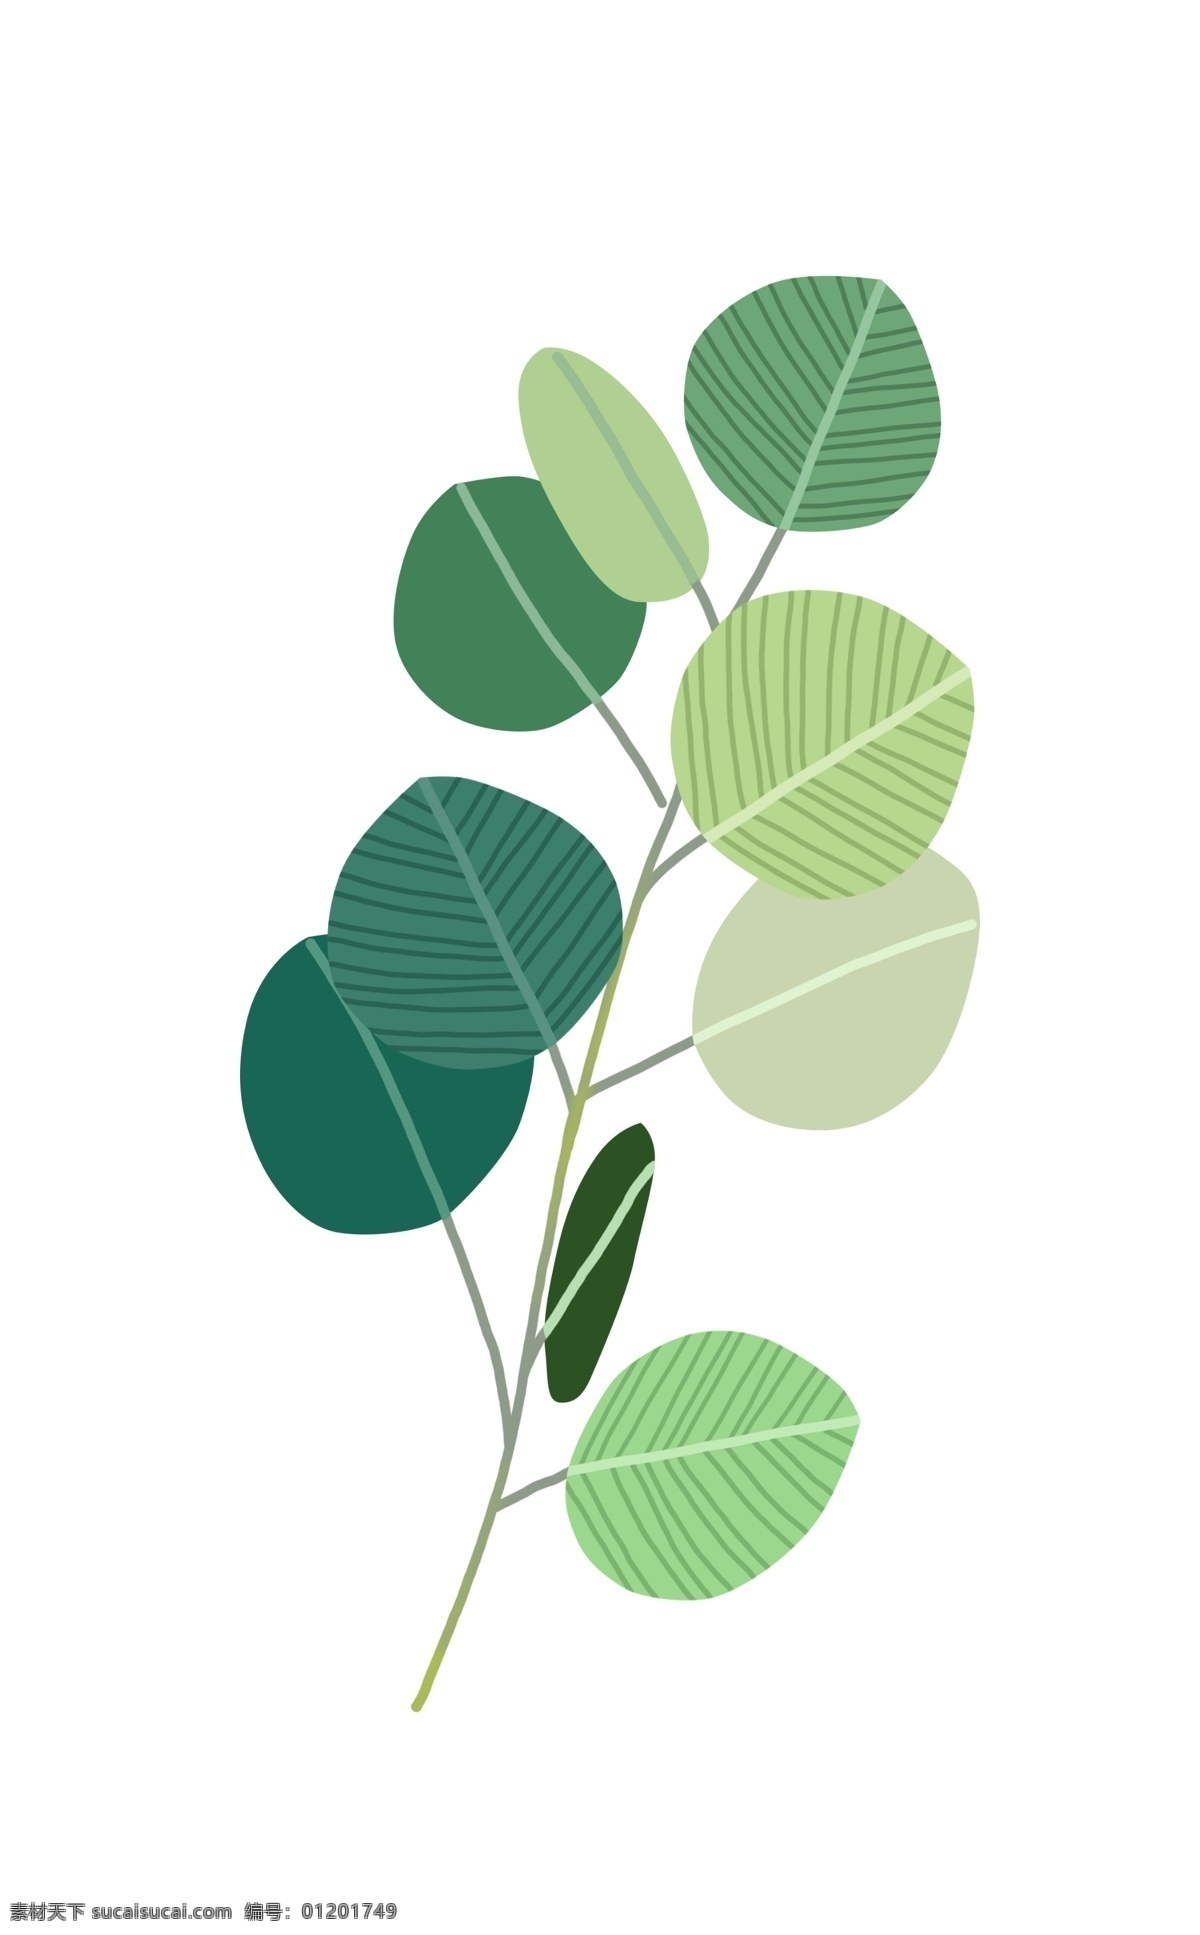 创意 绿色 树叶 插画 创意绿叶插画 绿色植物 卡通植物插画 植物 绿色的叶子 精美的树叶 圆形树叶插画